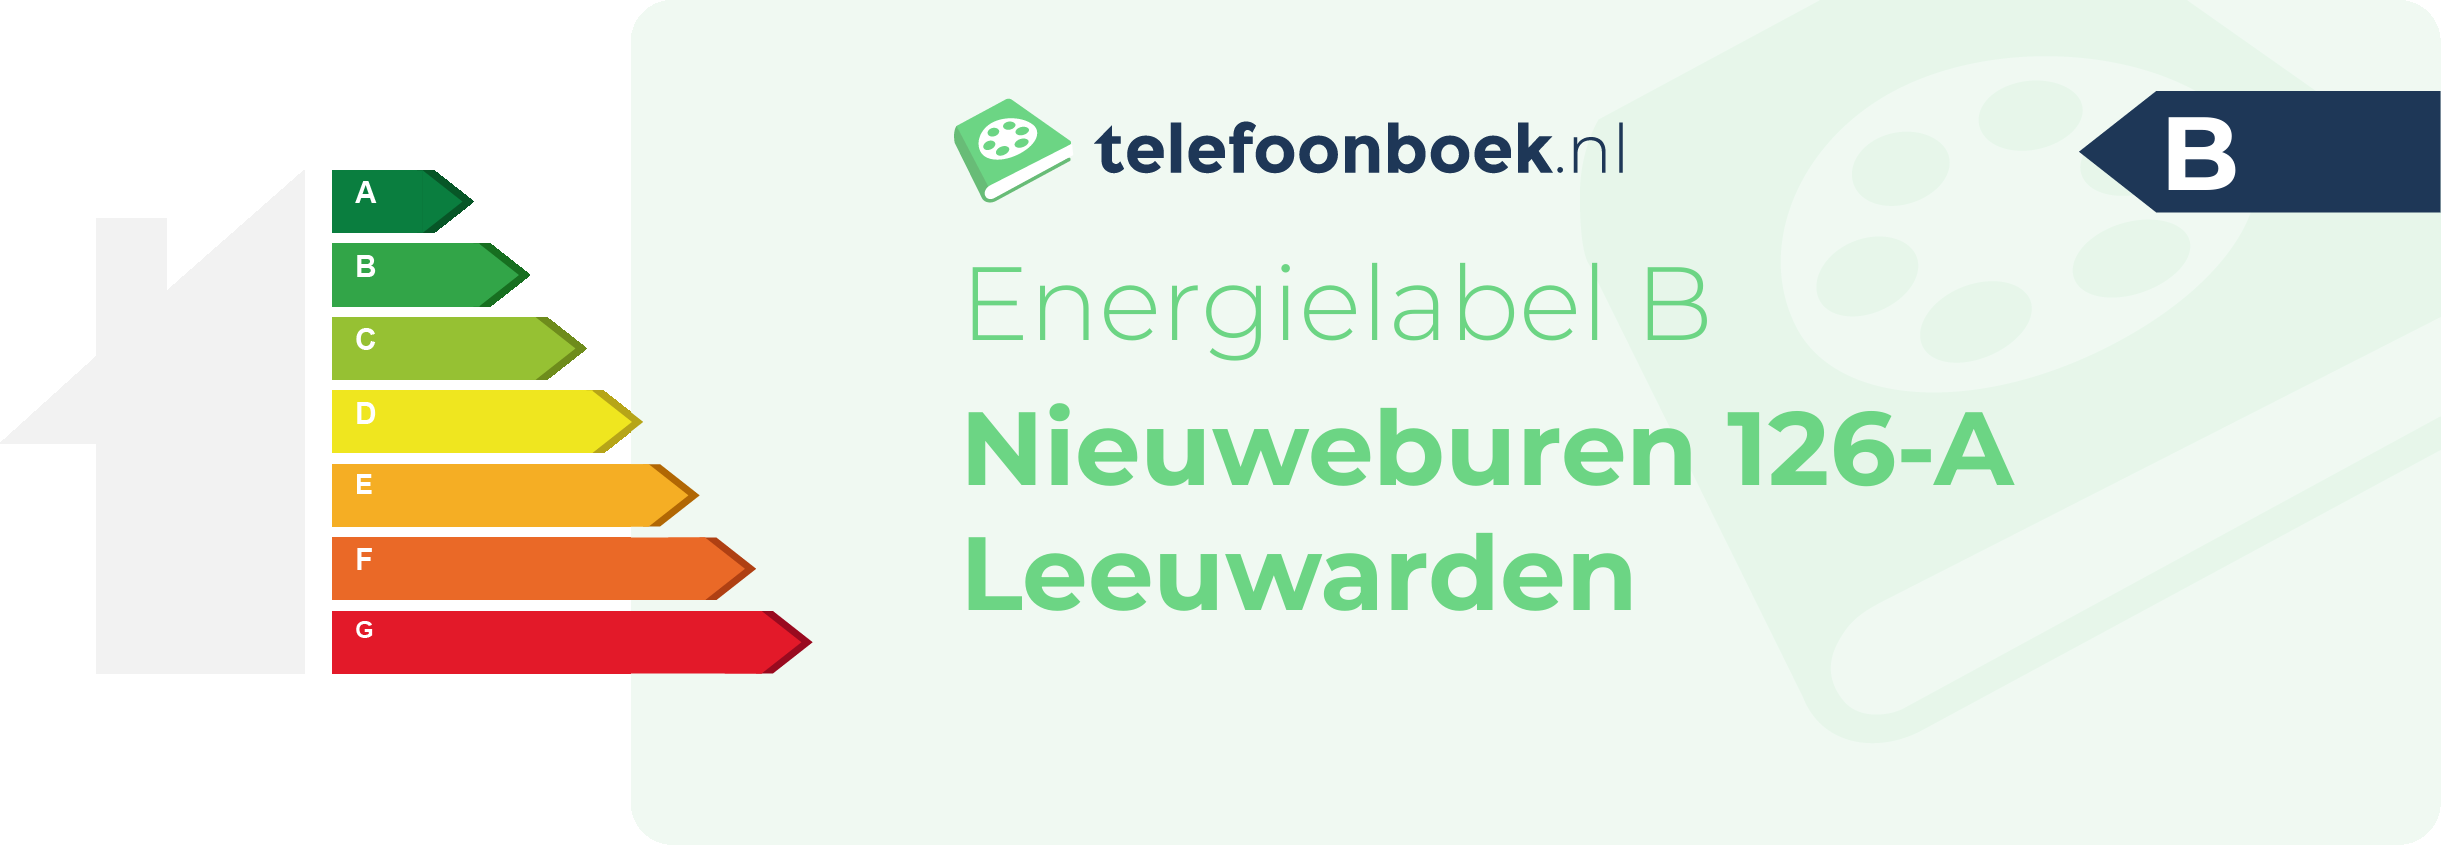 Energielabel Nieuweburen 126-A Leeuwarden